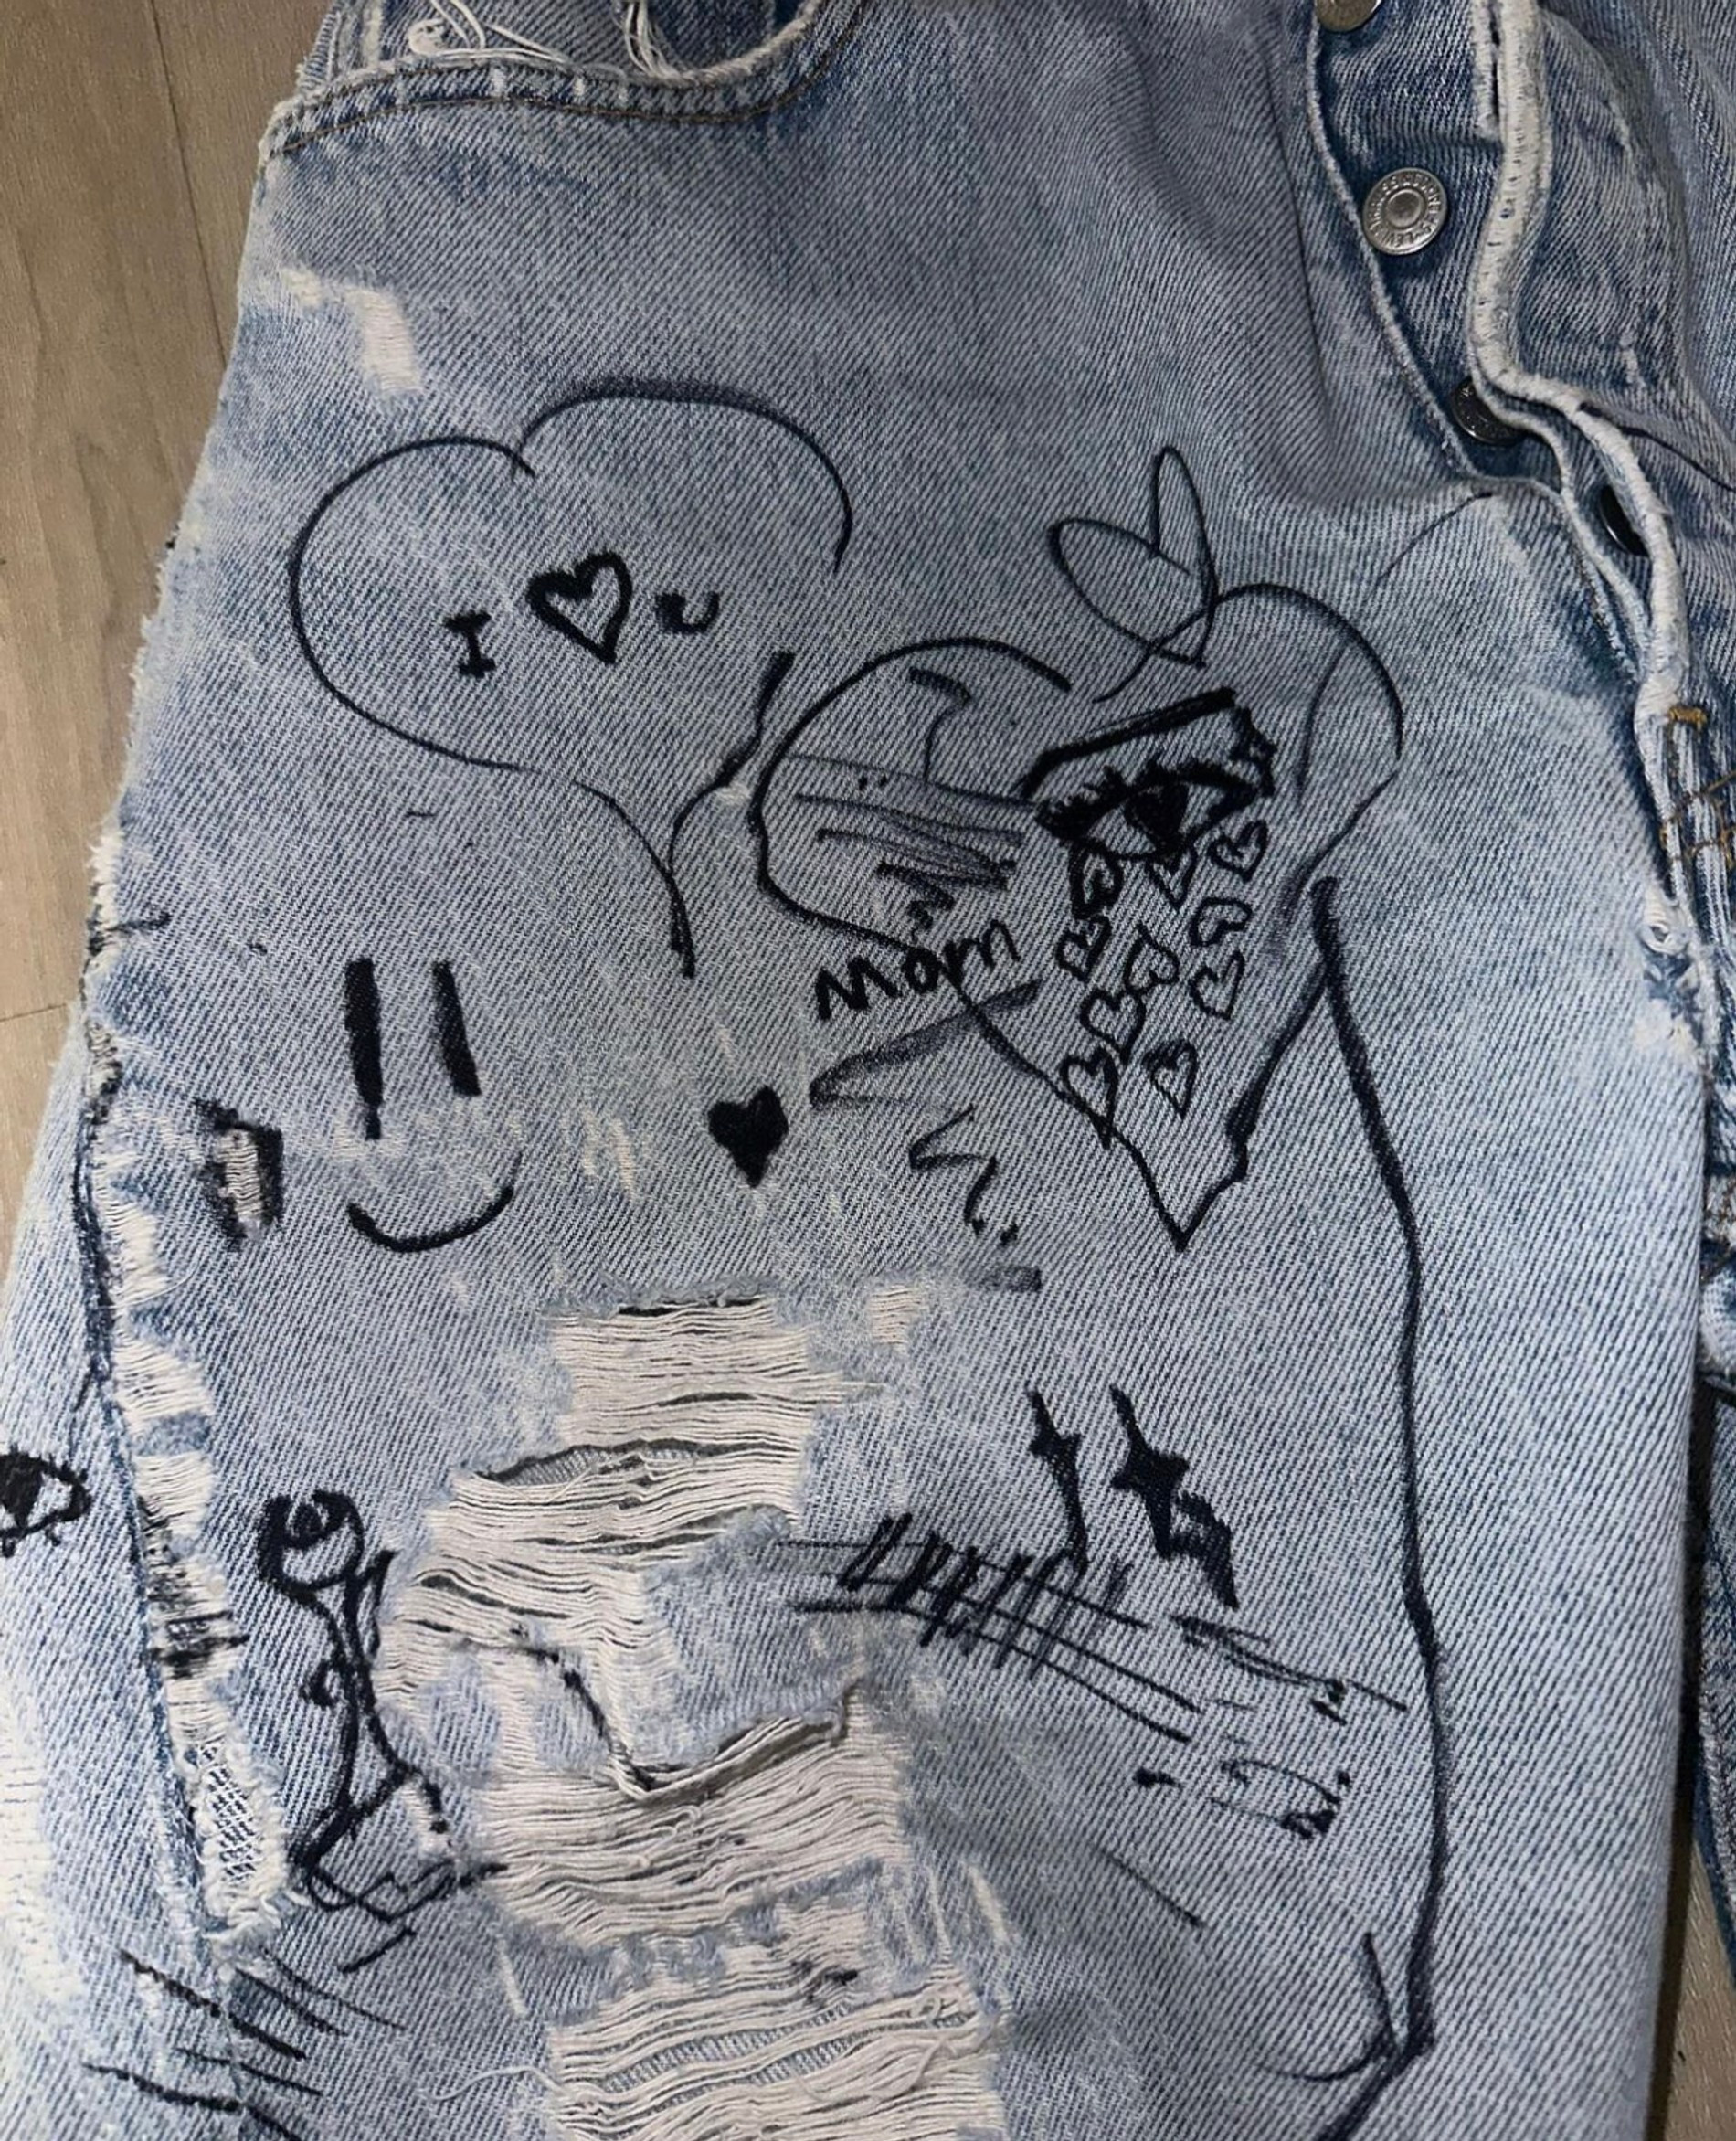 Разрисованные детьми джинсы. Фото: Инстаграм (запрещен в РФ) @kimkardashian